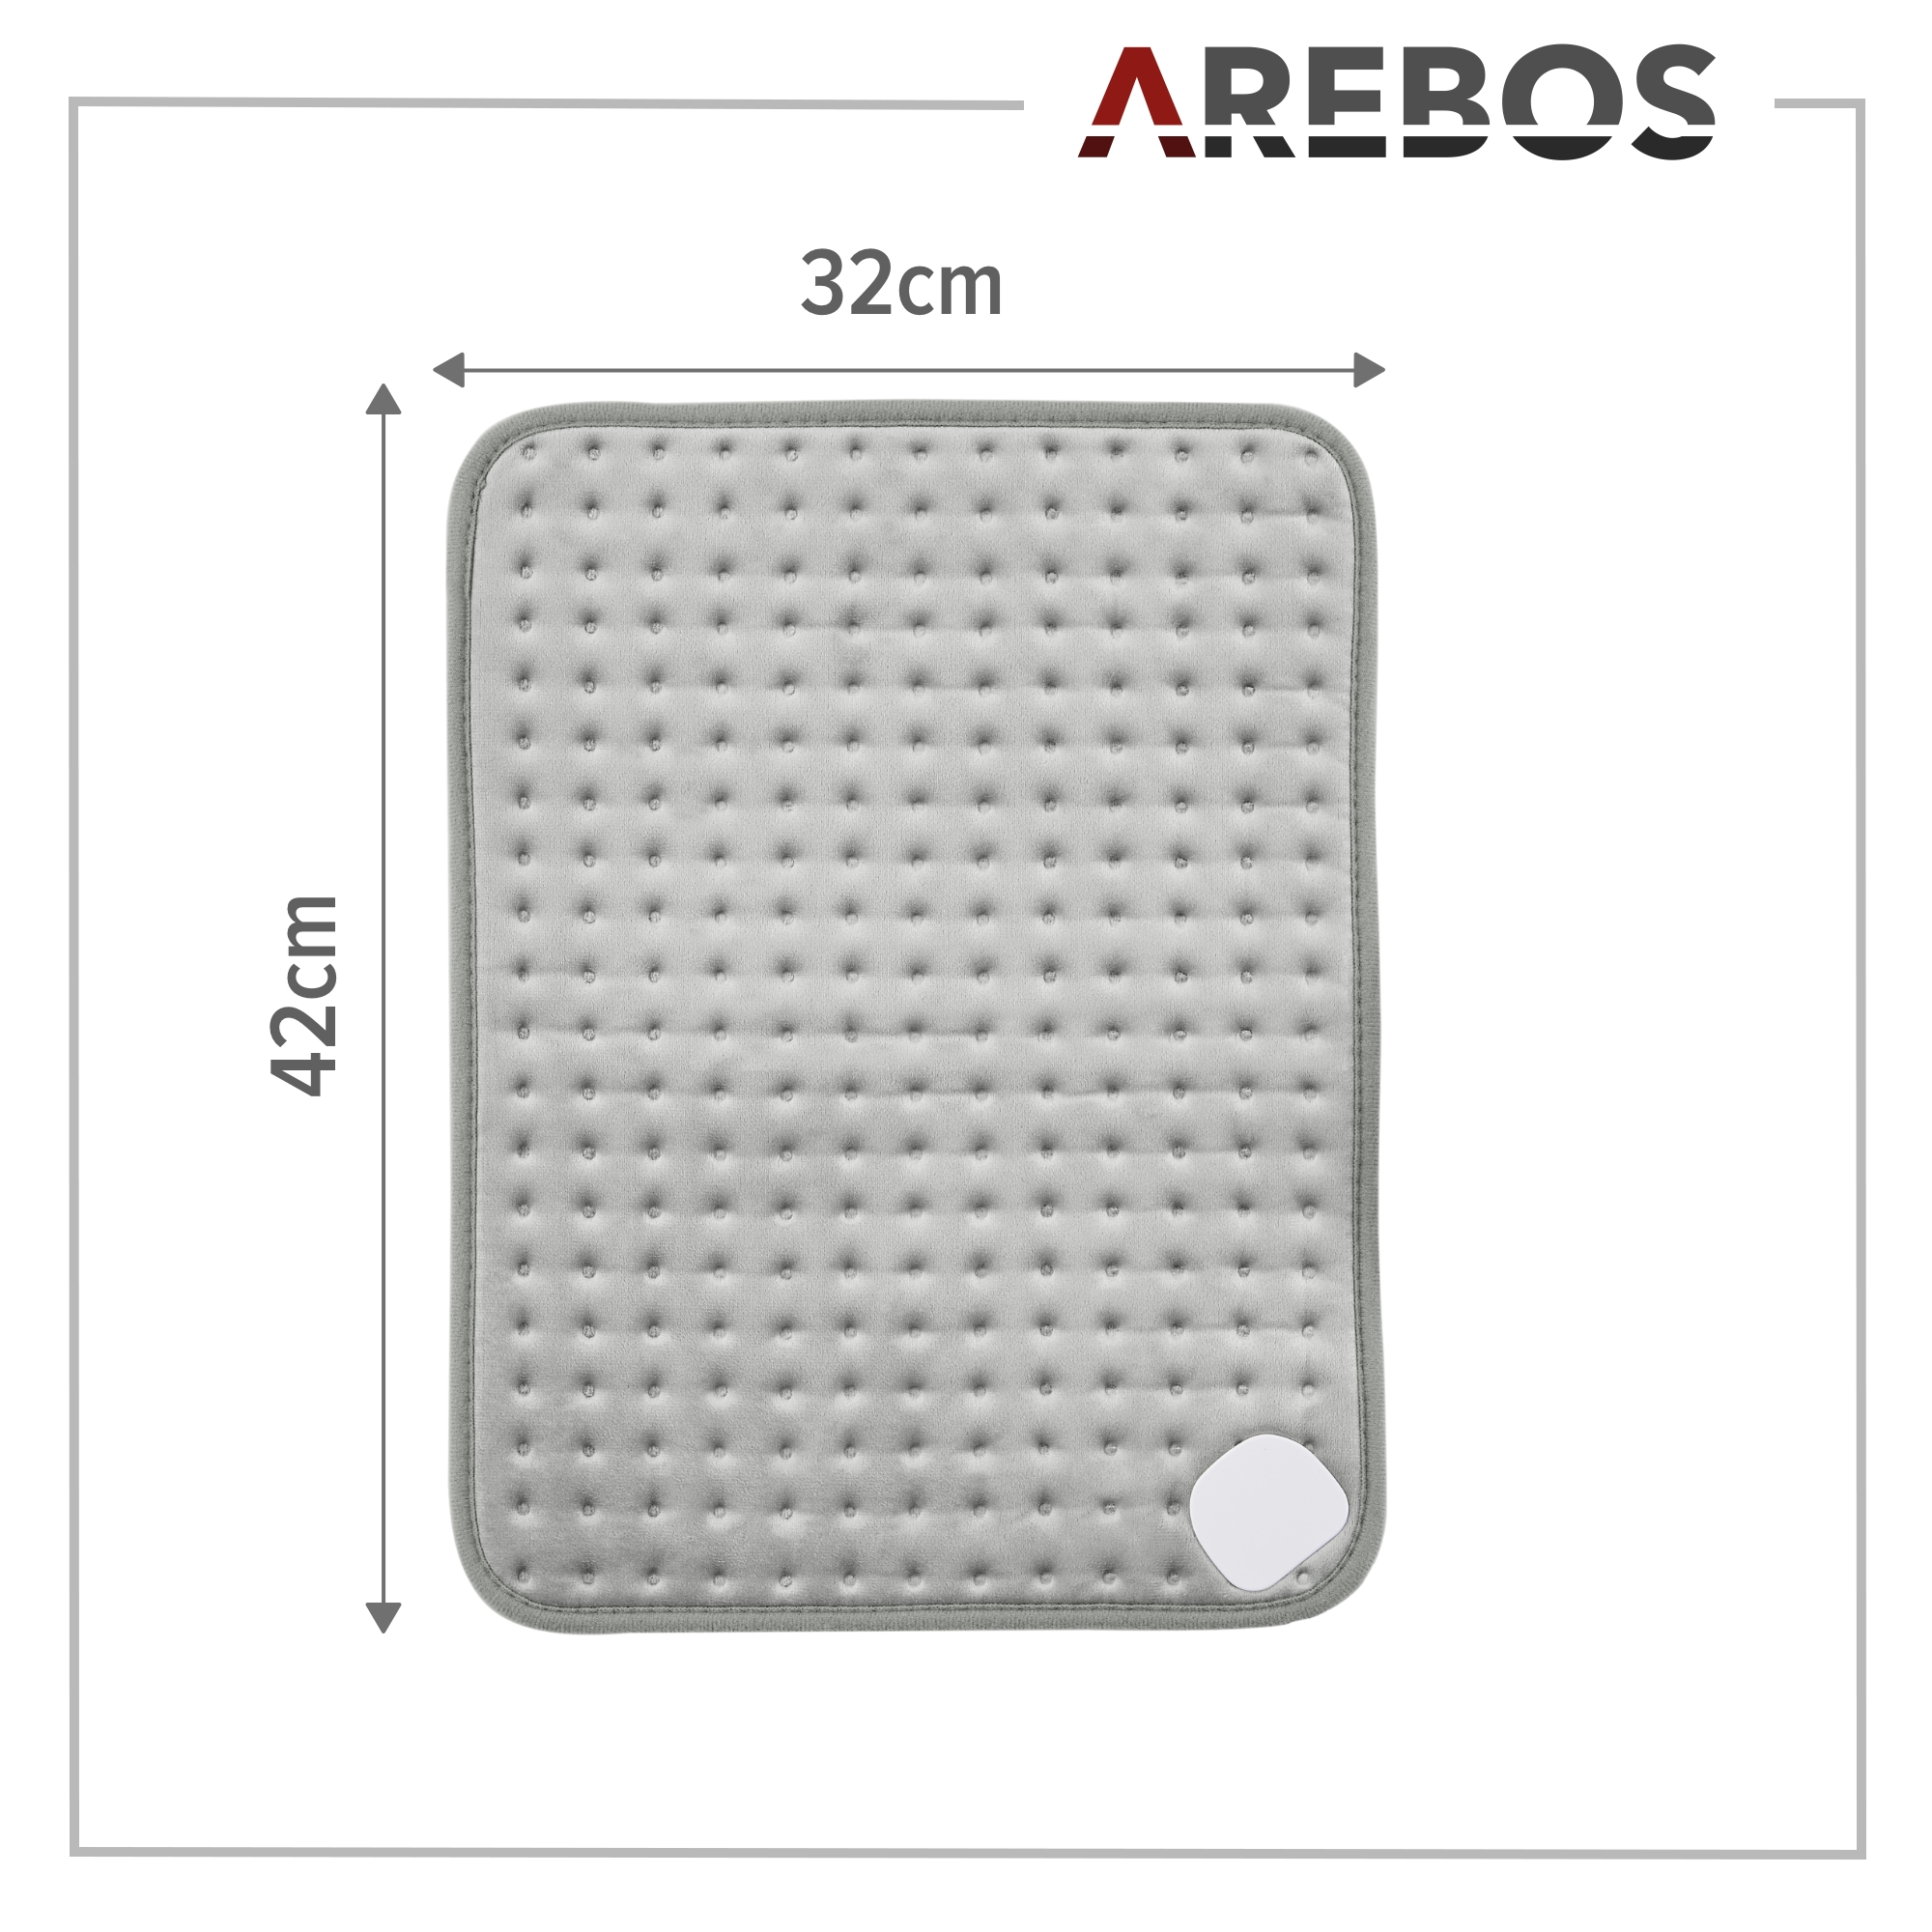 AREBOS Abschaltautomatik & Überhitzungsschutz | LED Heizkissen inkl. Fernbedienung 